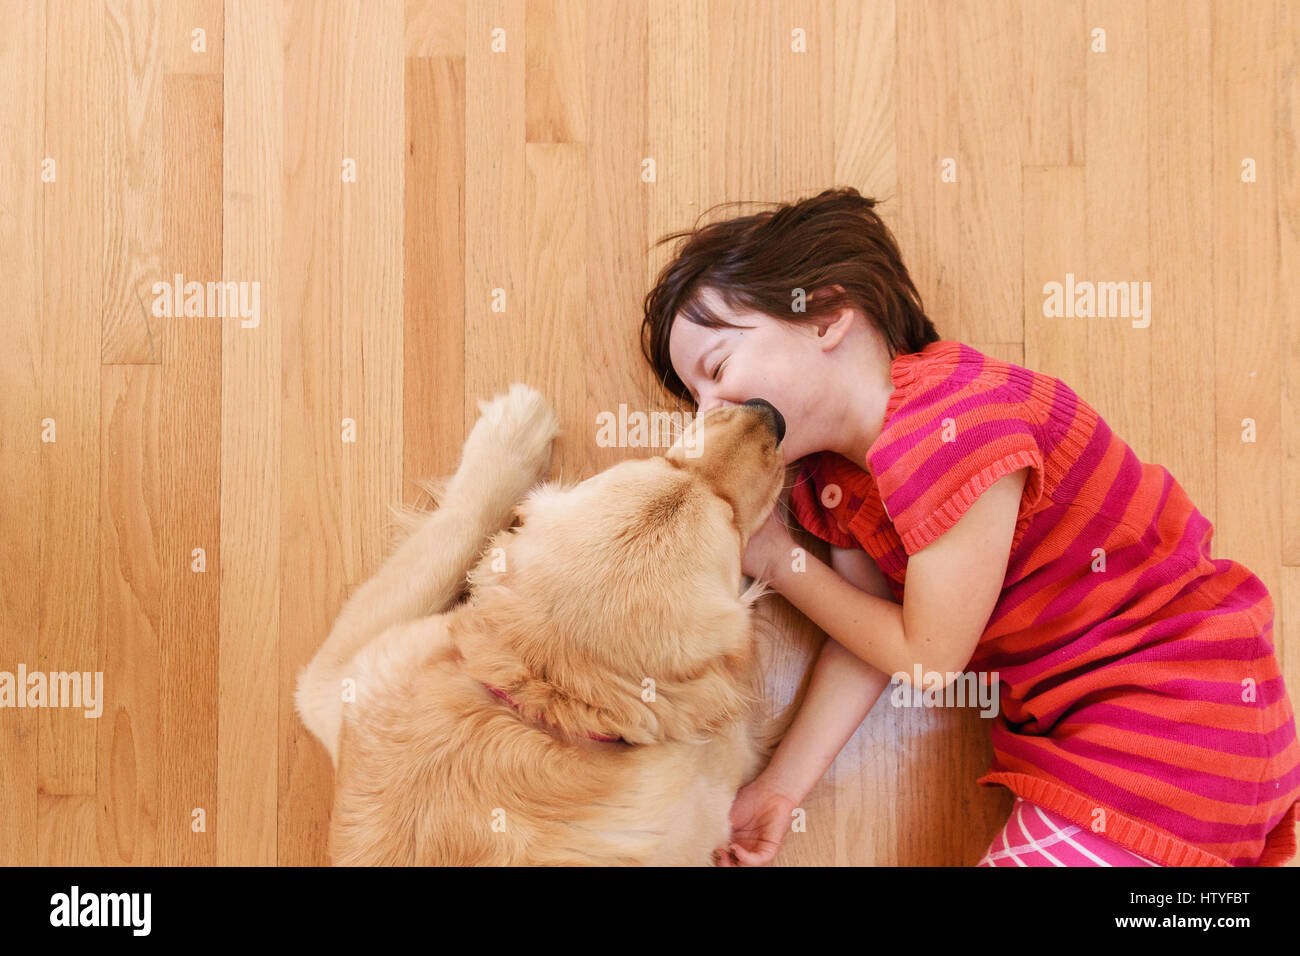 Vue de dessus de golden retriever dog licking visage de la fille. Banque D'Images